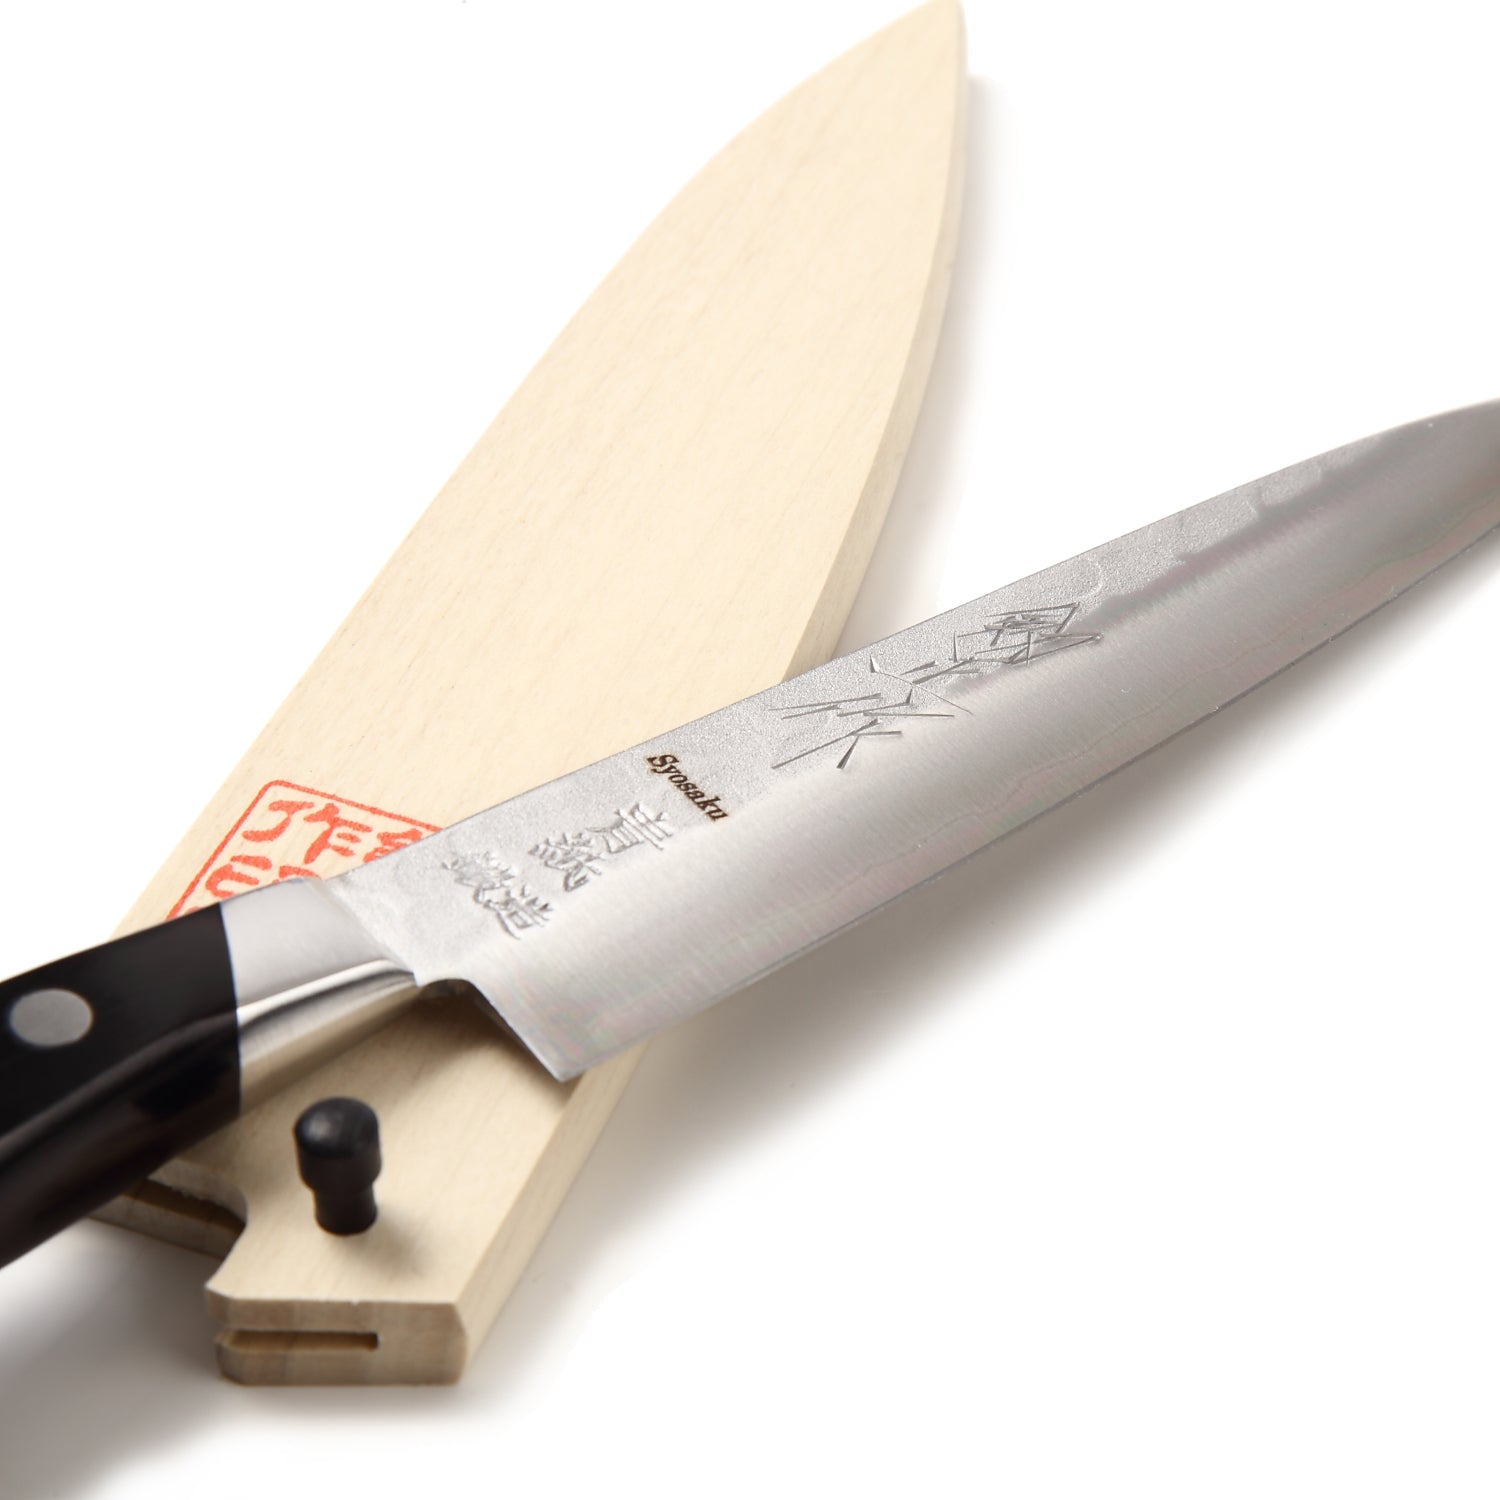 Syosaku Japanese Chef Knife INOX AUS-8A Stainless Steel Black Pakkawood Handle, Gyuto 9.5-Inch (240mm)